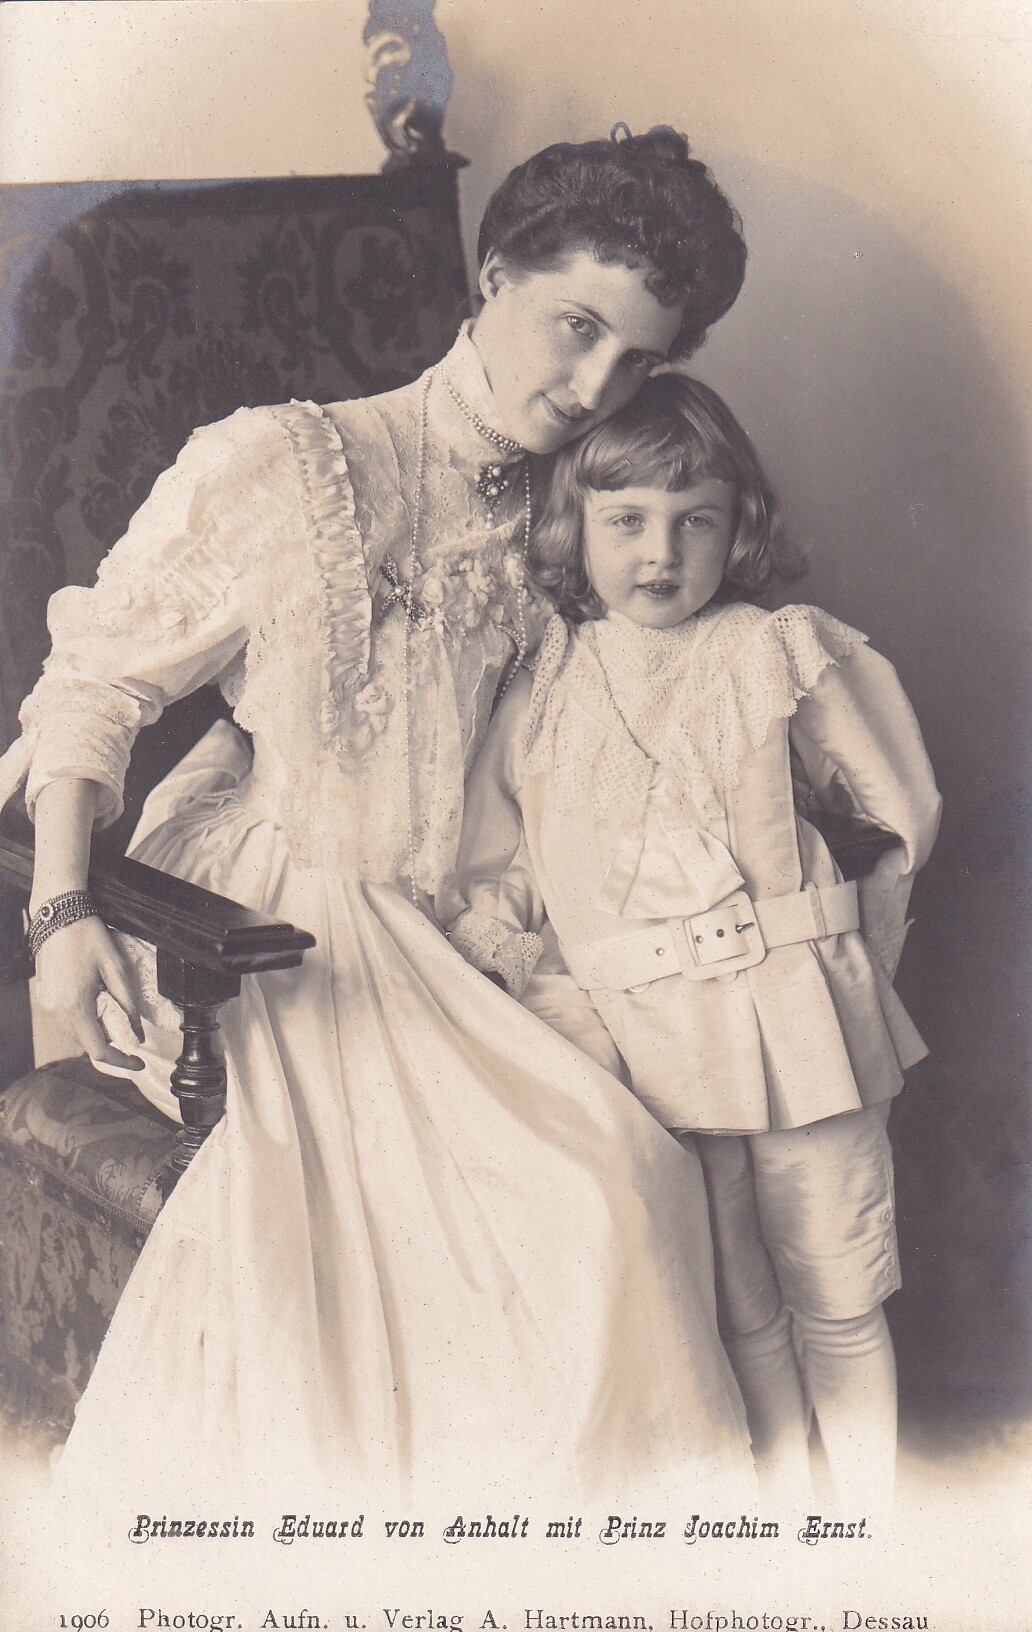 Bildpostkarte mit Foto der Prinzessin Luise von Anhalt mit ihrem Sohn Joachim Ernst, 1906 (Schloß Wernigerode GmbH RR-F)